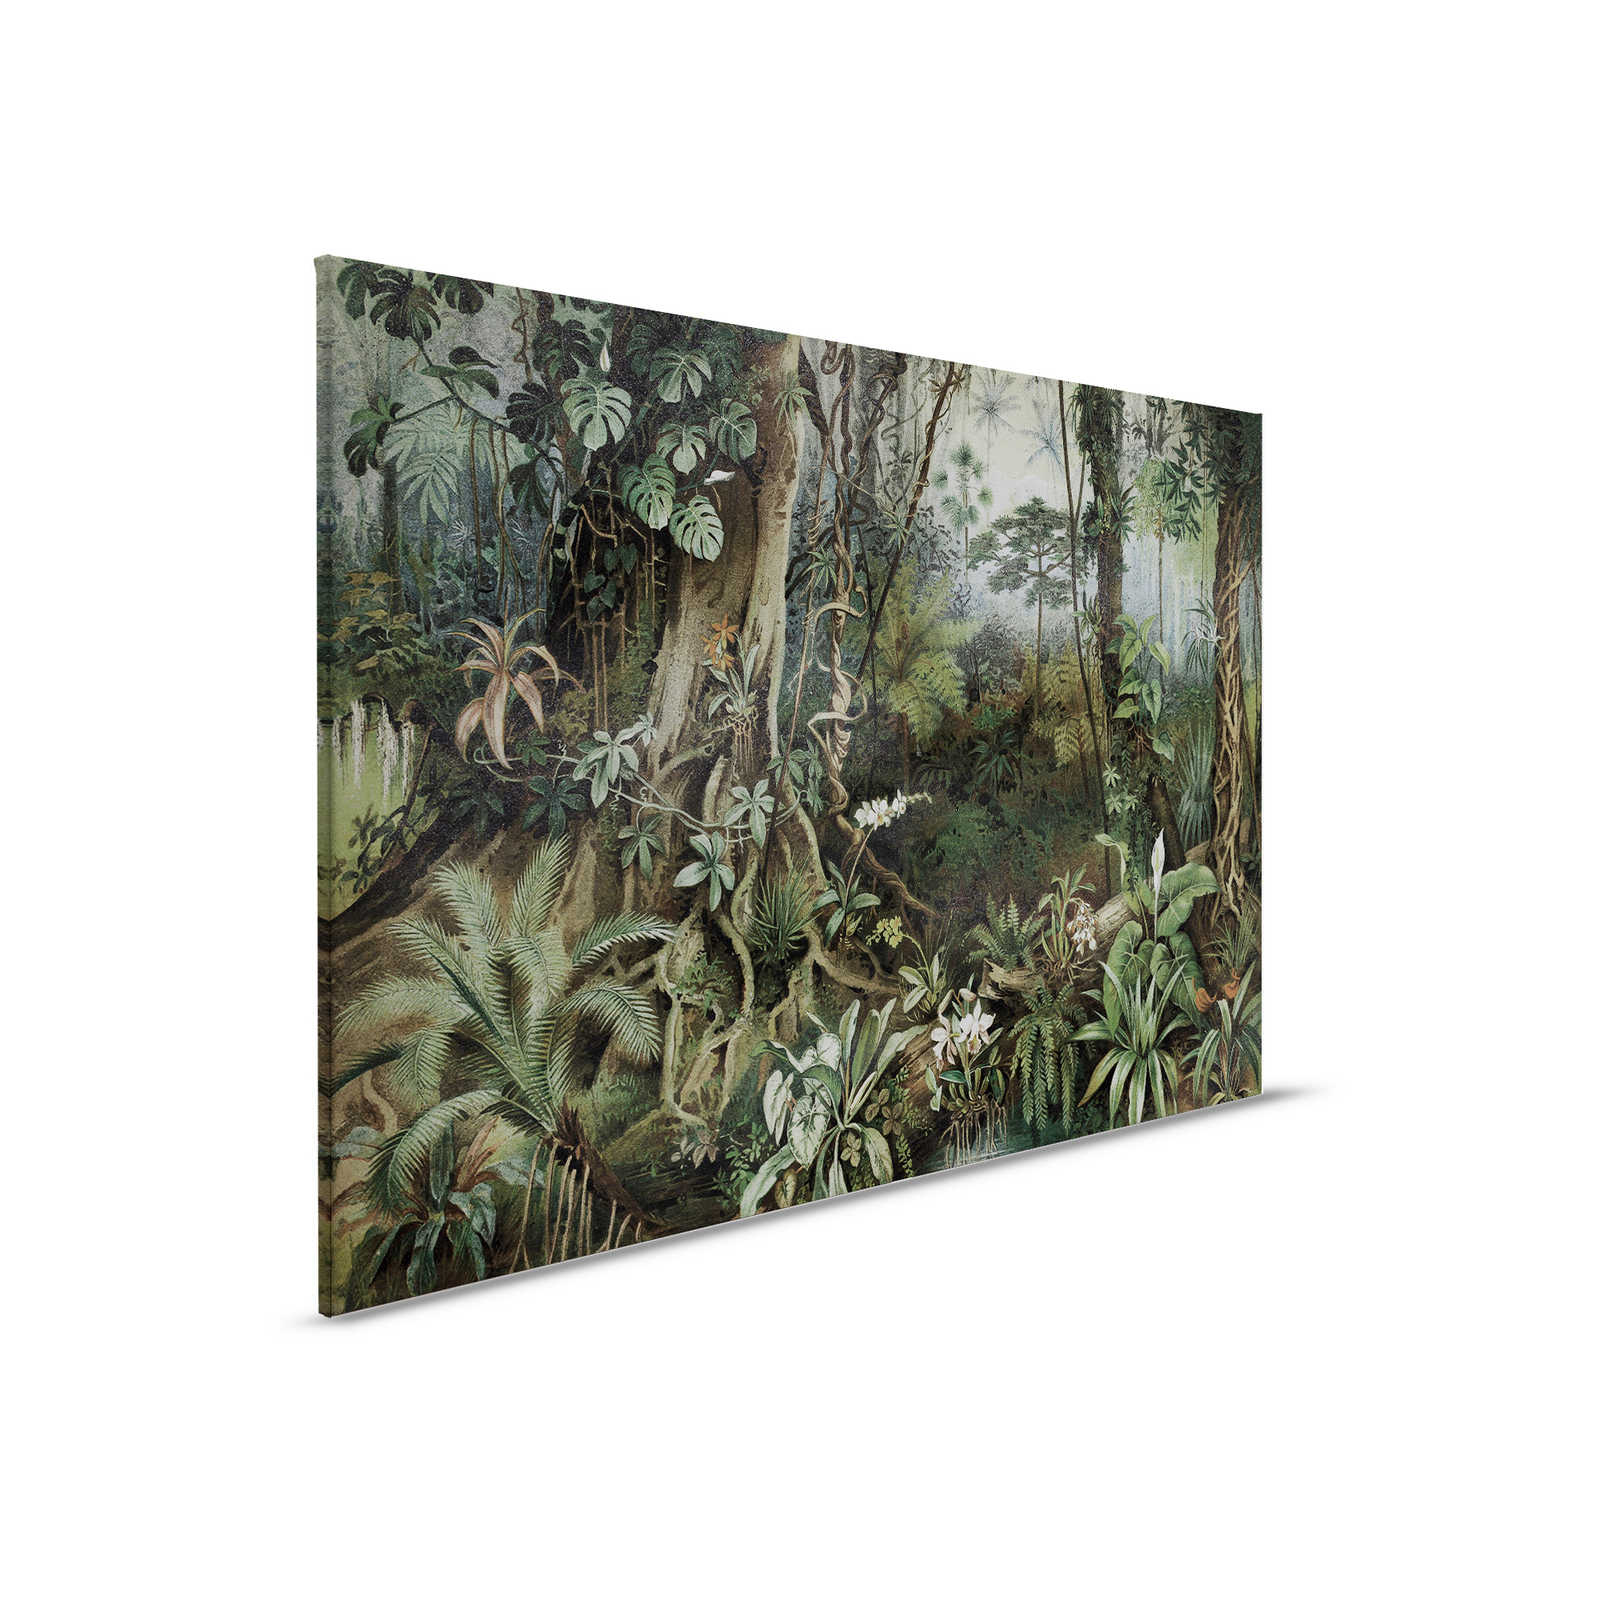         Dschungel Leinwandbild im Zeichenstil | walls by patel – 0,90 m x 0,60 m
    